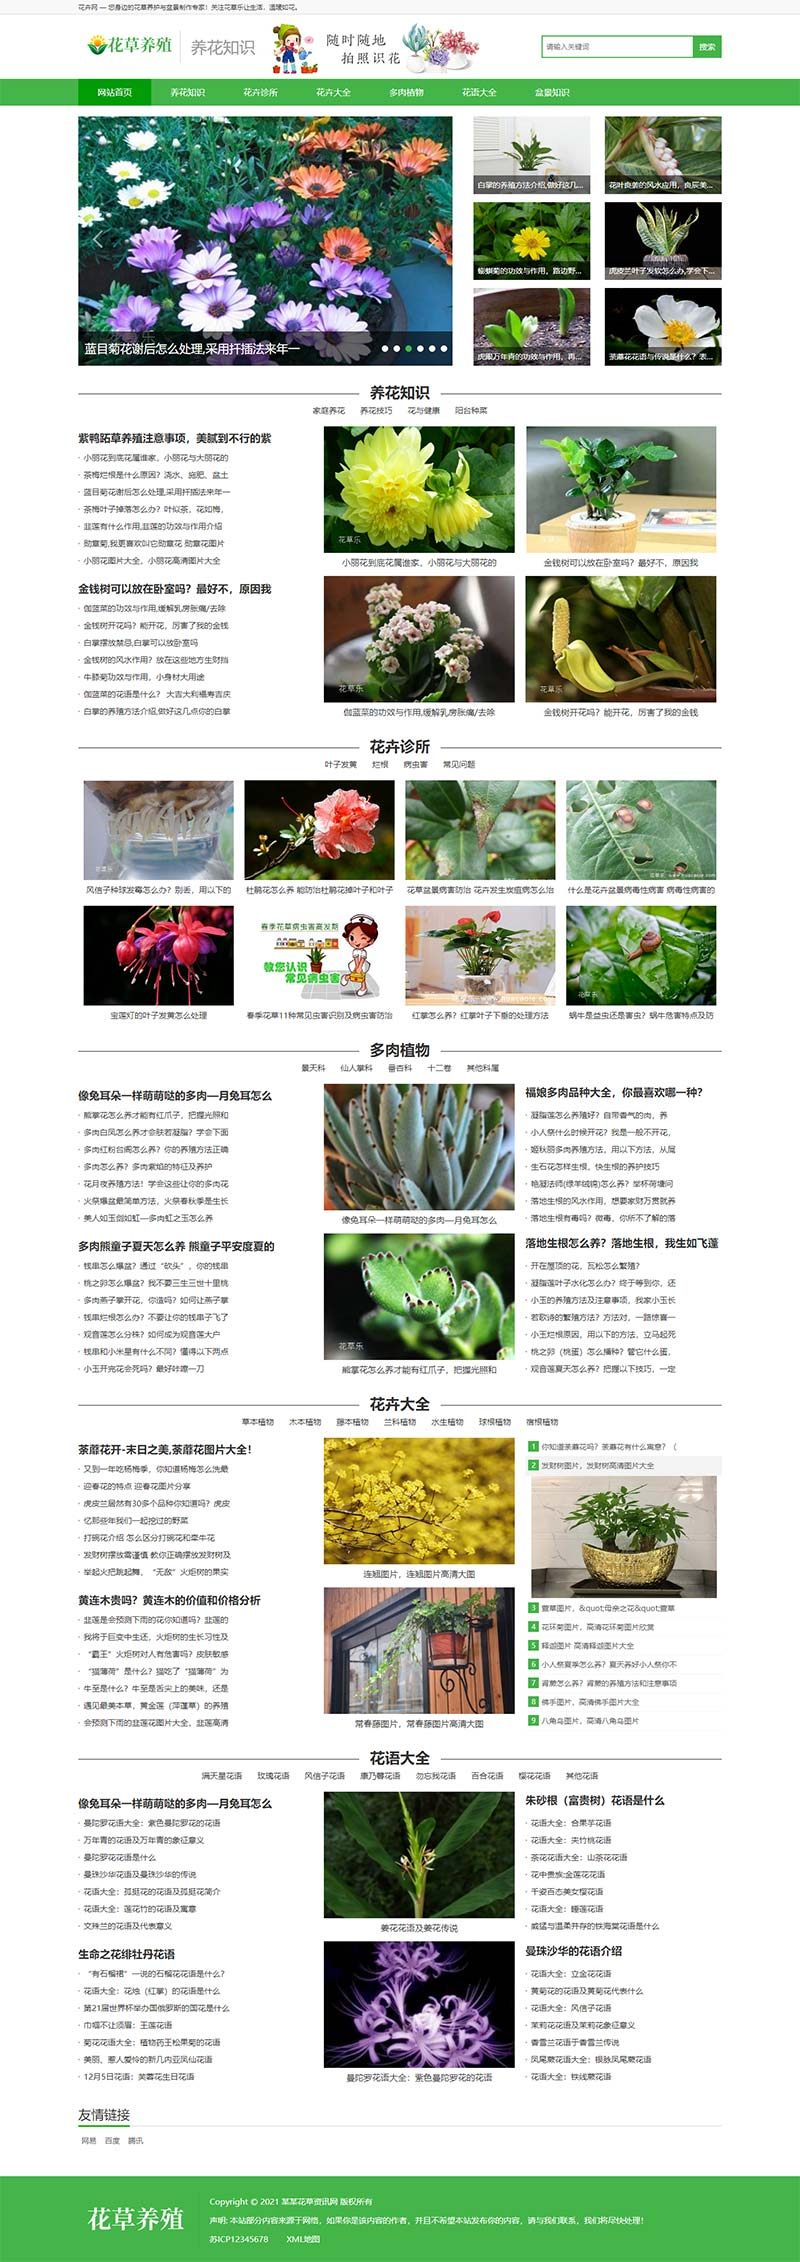 花卉养殖新闻资讯类网站源码pbootcms模板插图源码资源库